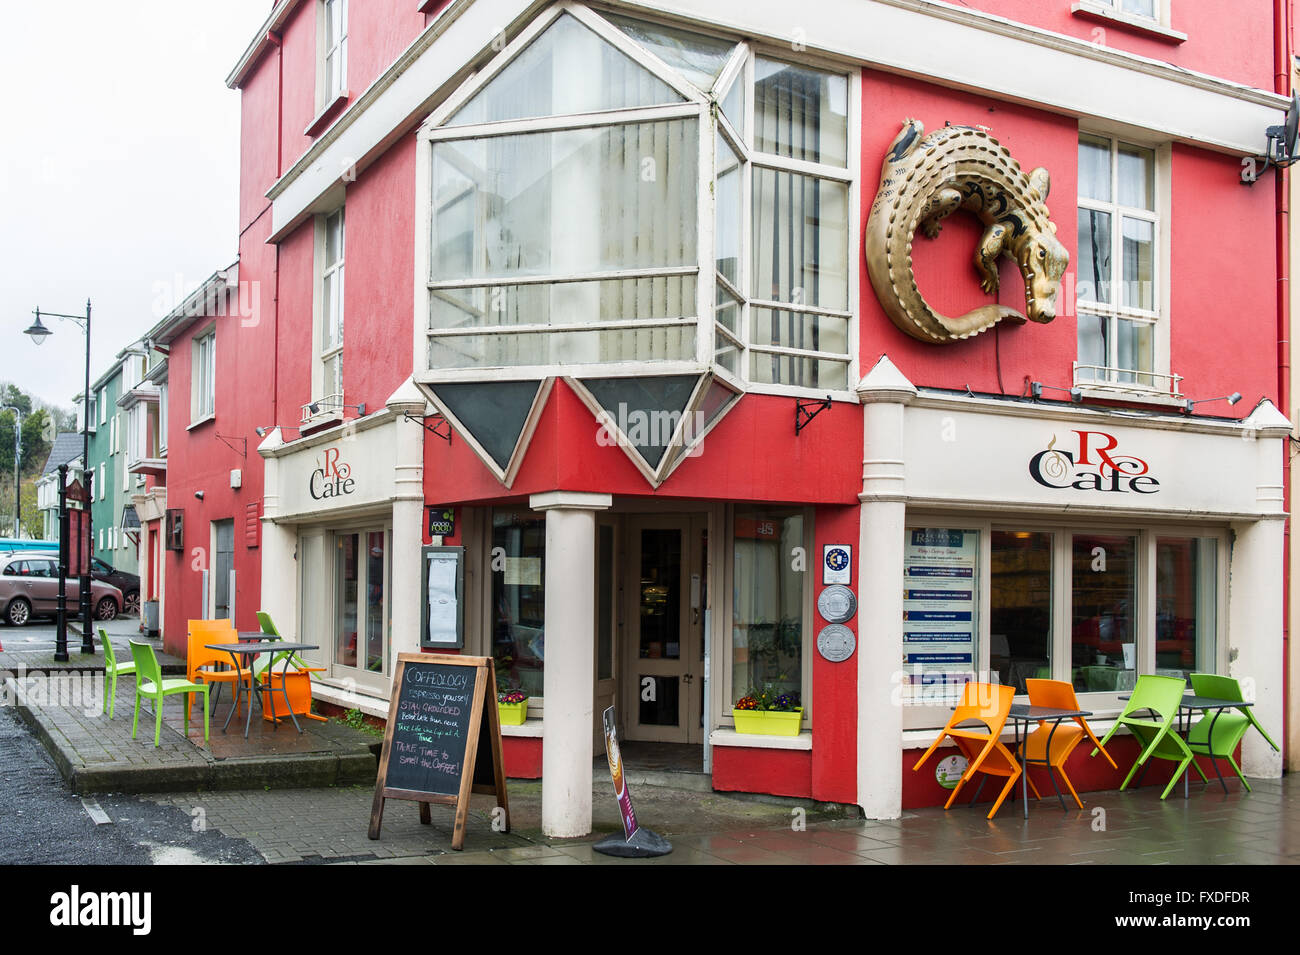 El R Cafe en tono de Wolfe Street, Clonakilty, Cork, Irlanda. Foto de stock